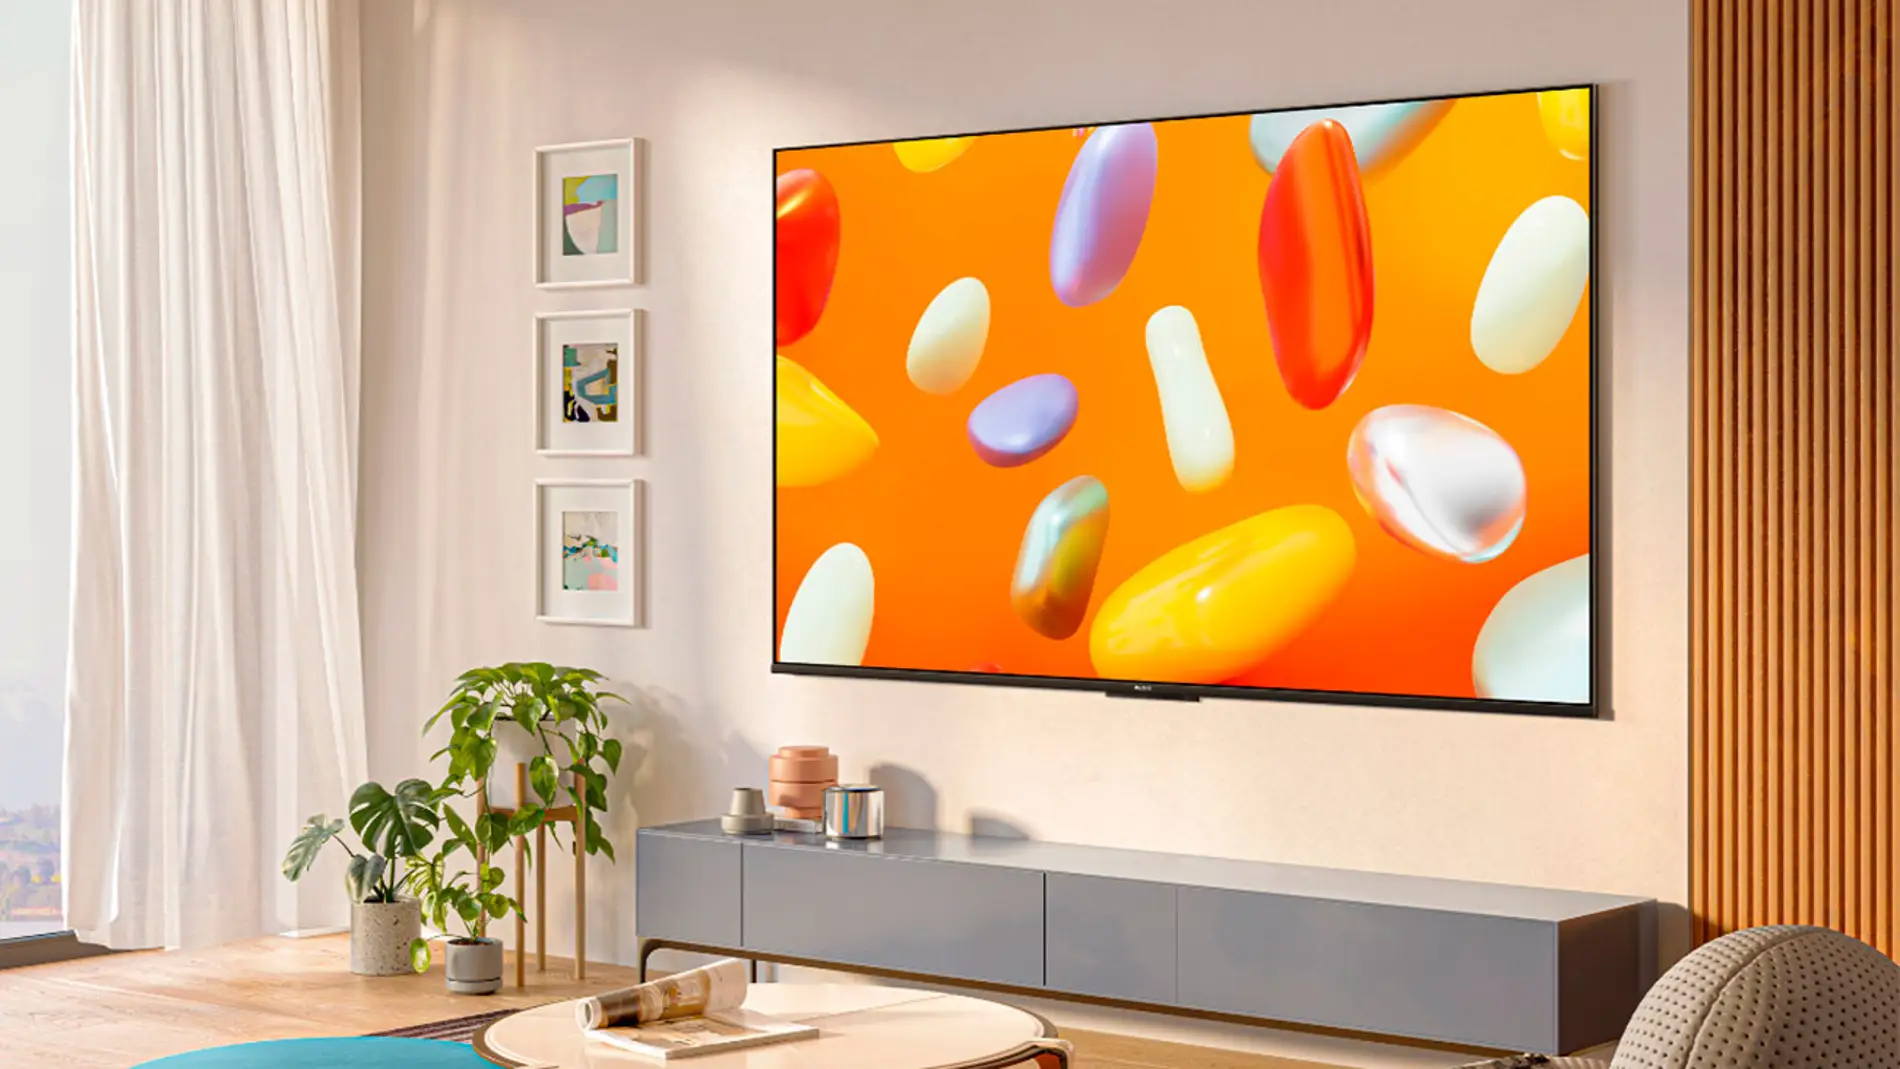 Xiaomi amplía su gama de televisores más económica con un nuevo modelo de 65  pulgadas - Noticias Xiaomi - XIAOMIADICTOS